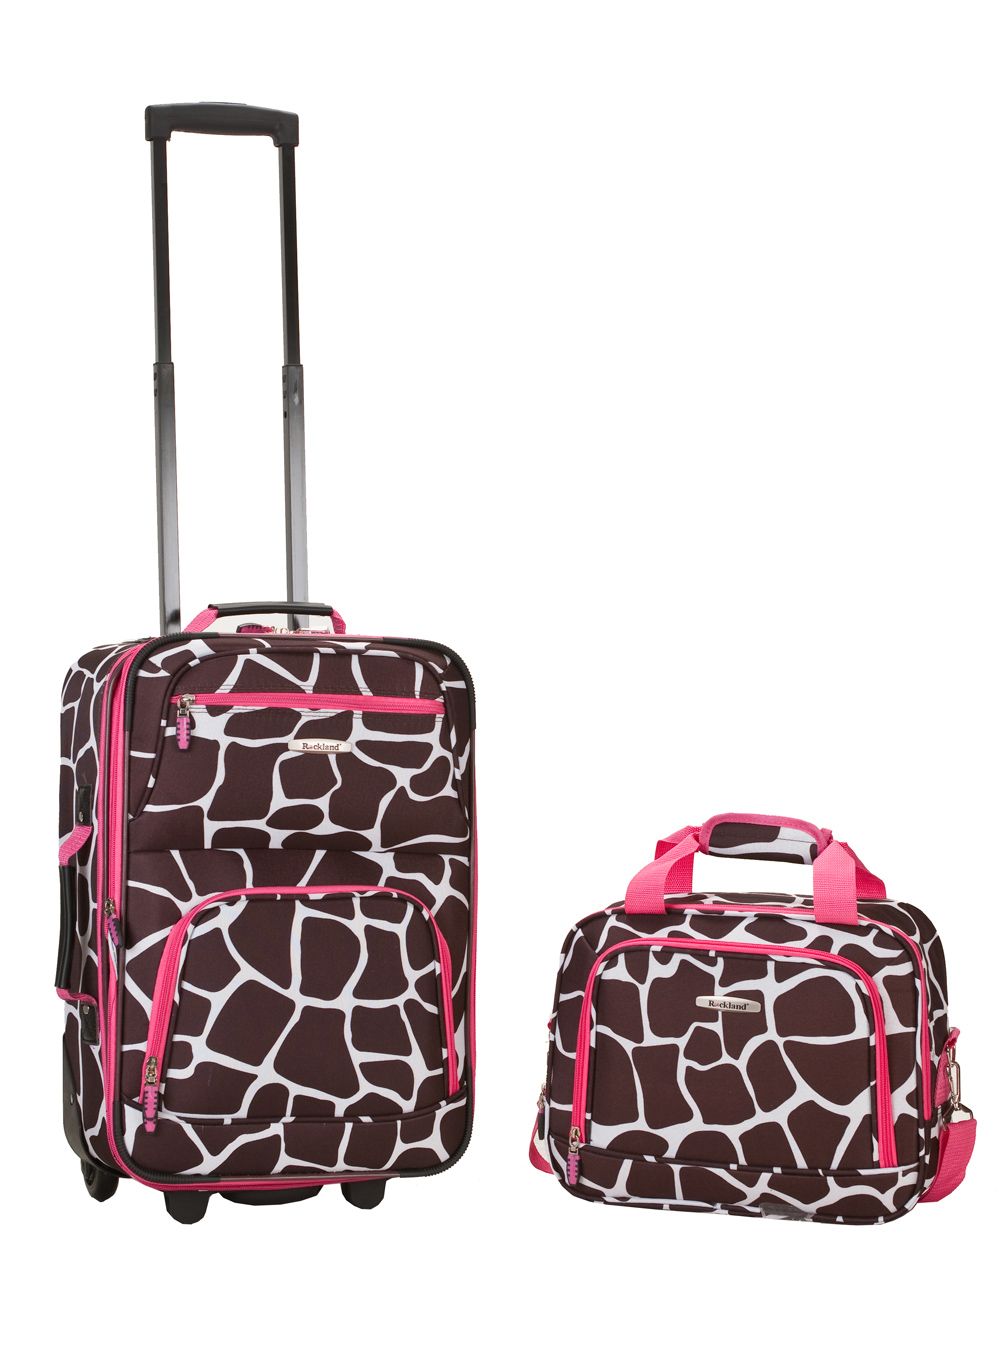 Rockland Fox Luggage 2-Piece Luggage Set - Pink Giraffe